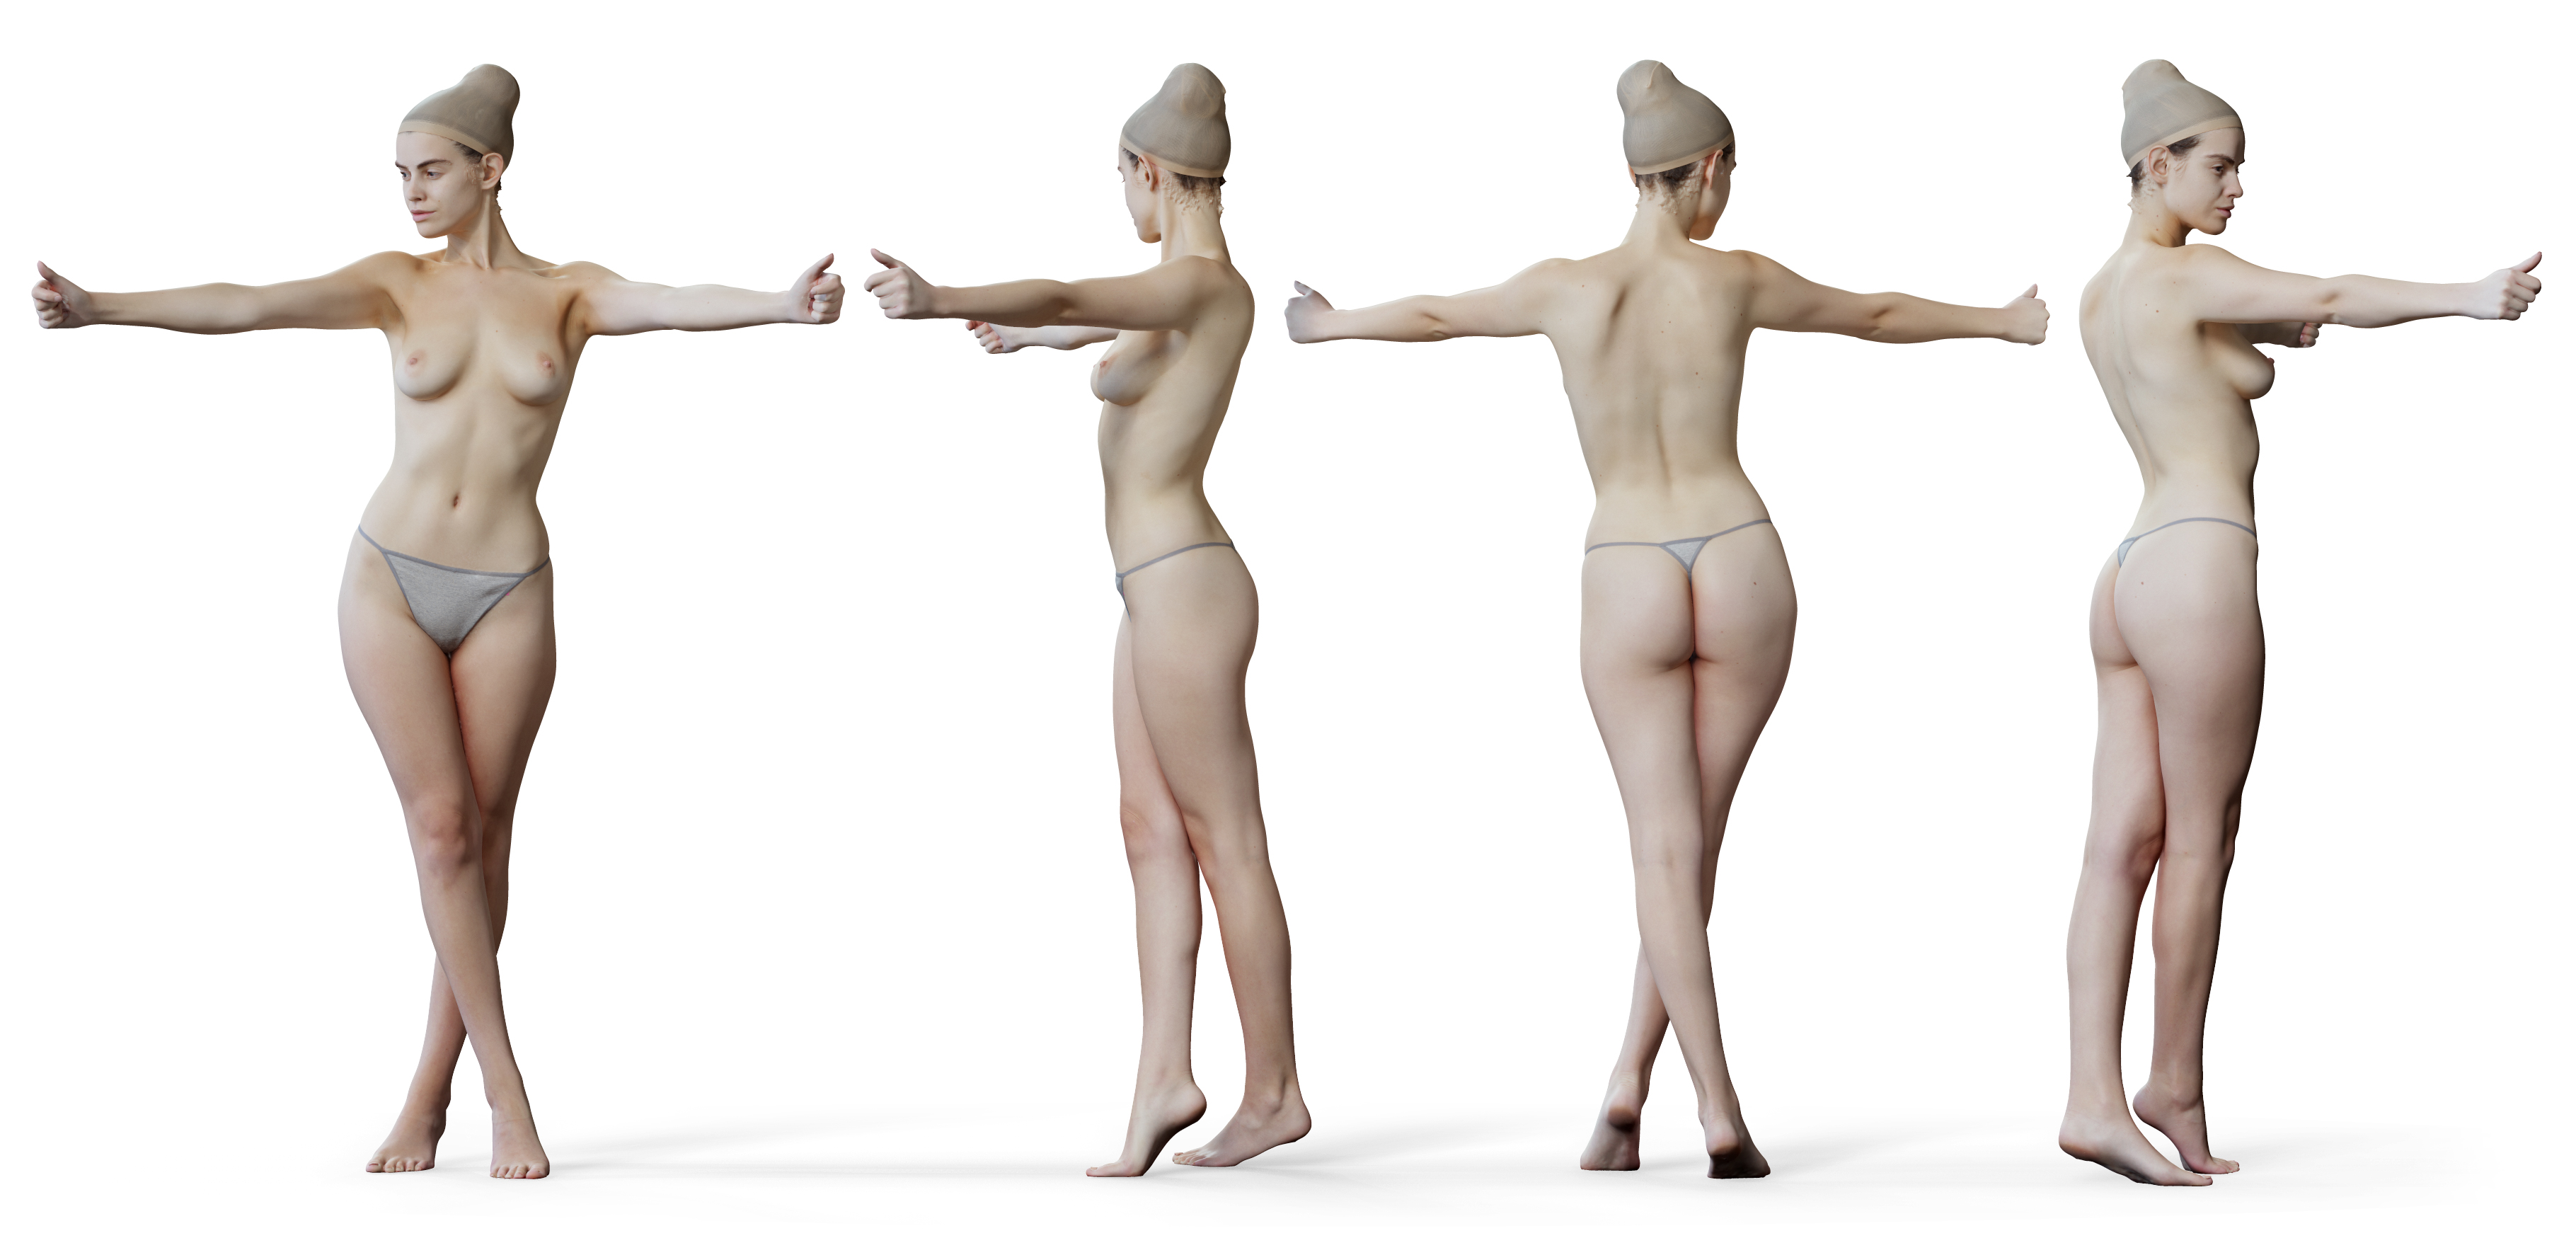 3D male body model download